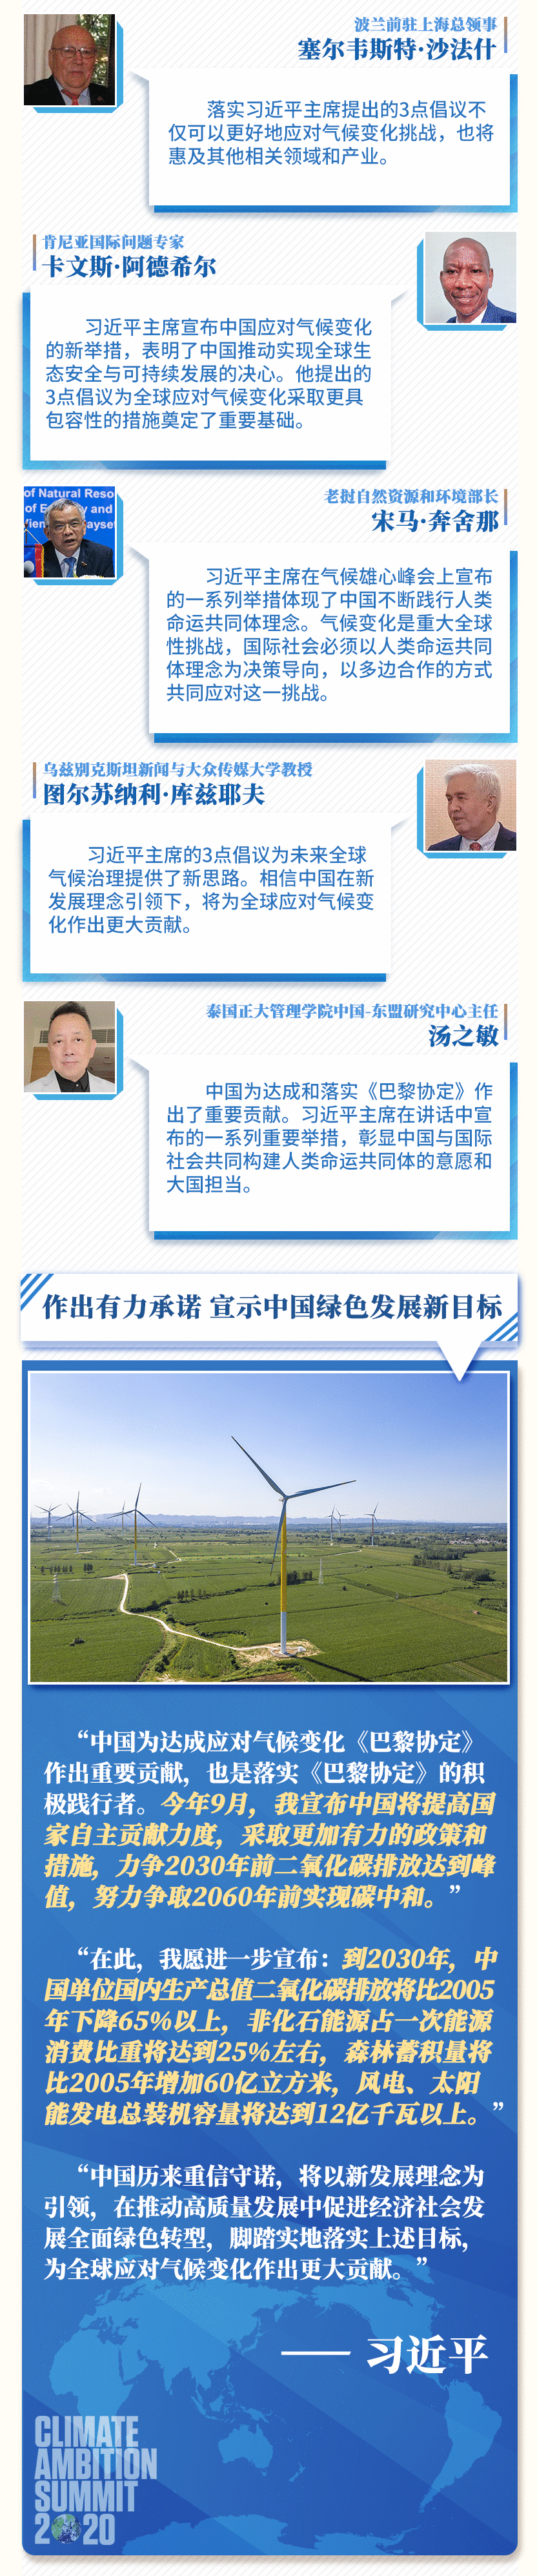 第一报道 | 应对气候变化 这份中国方案赢得世界广泛赞誉